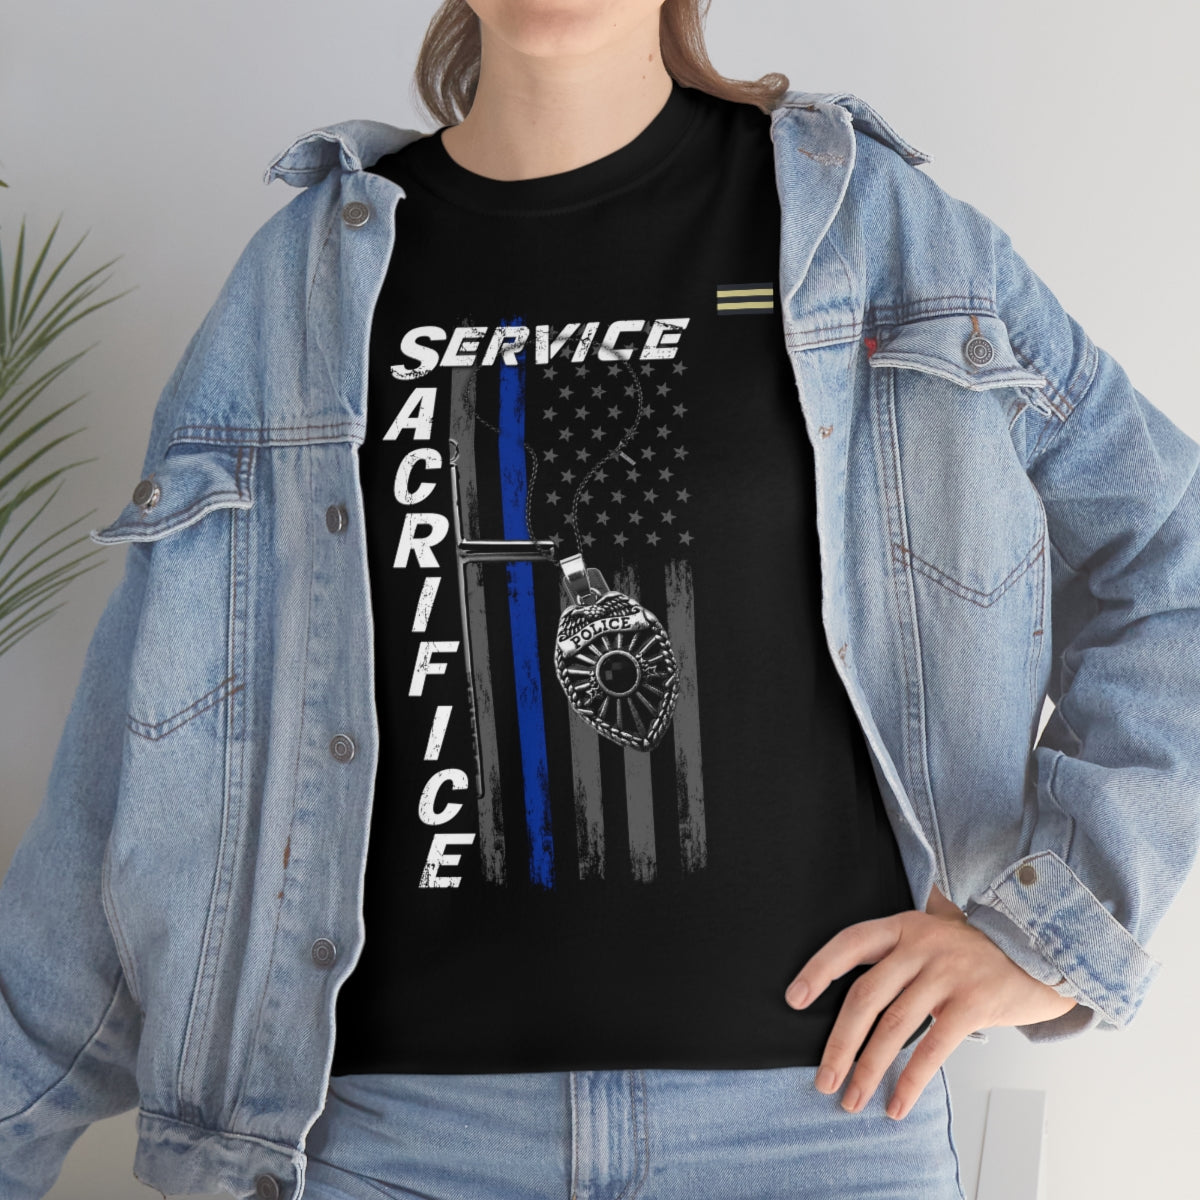 Service Sacrifice Law Enforcement T-shirt